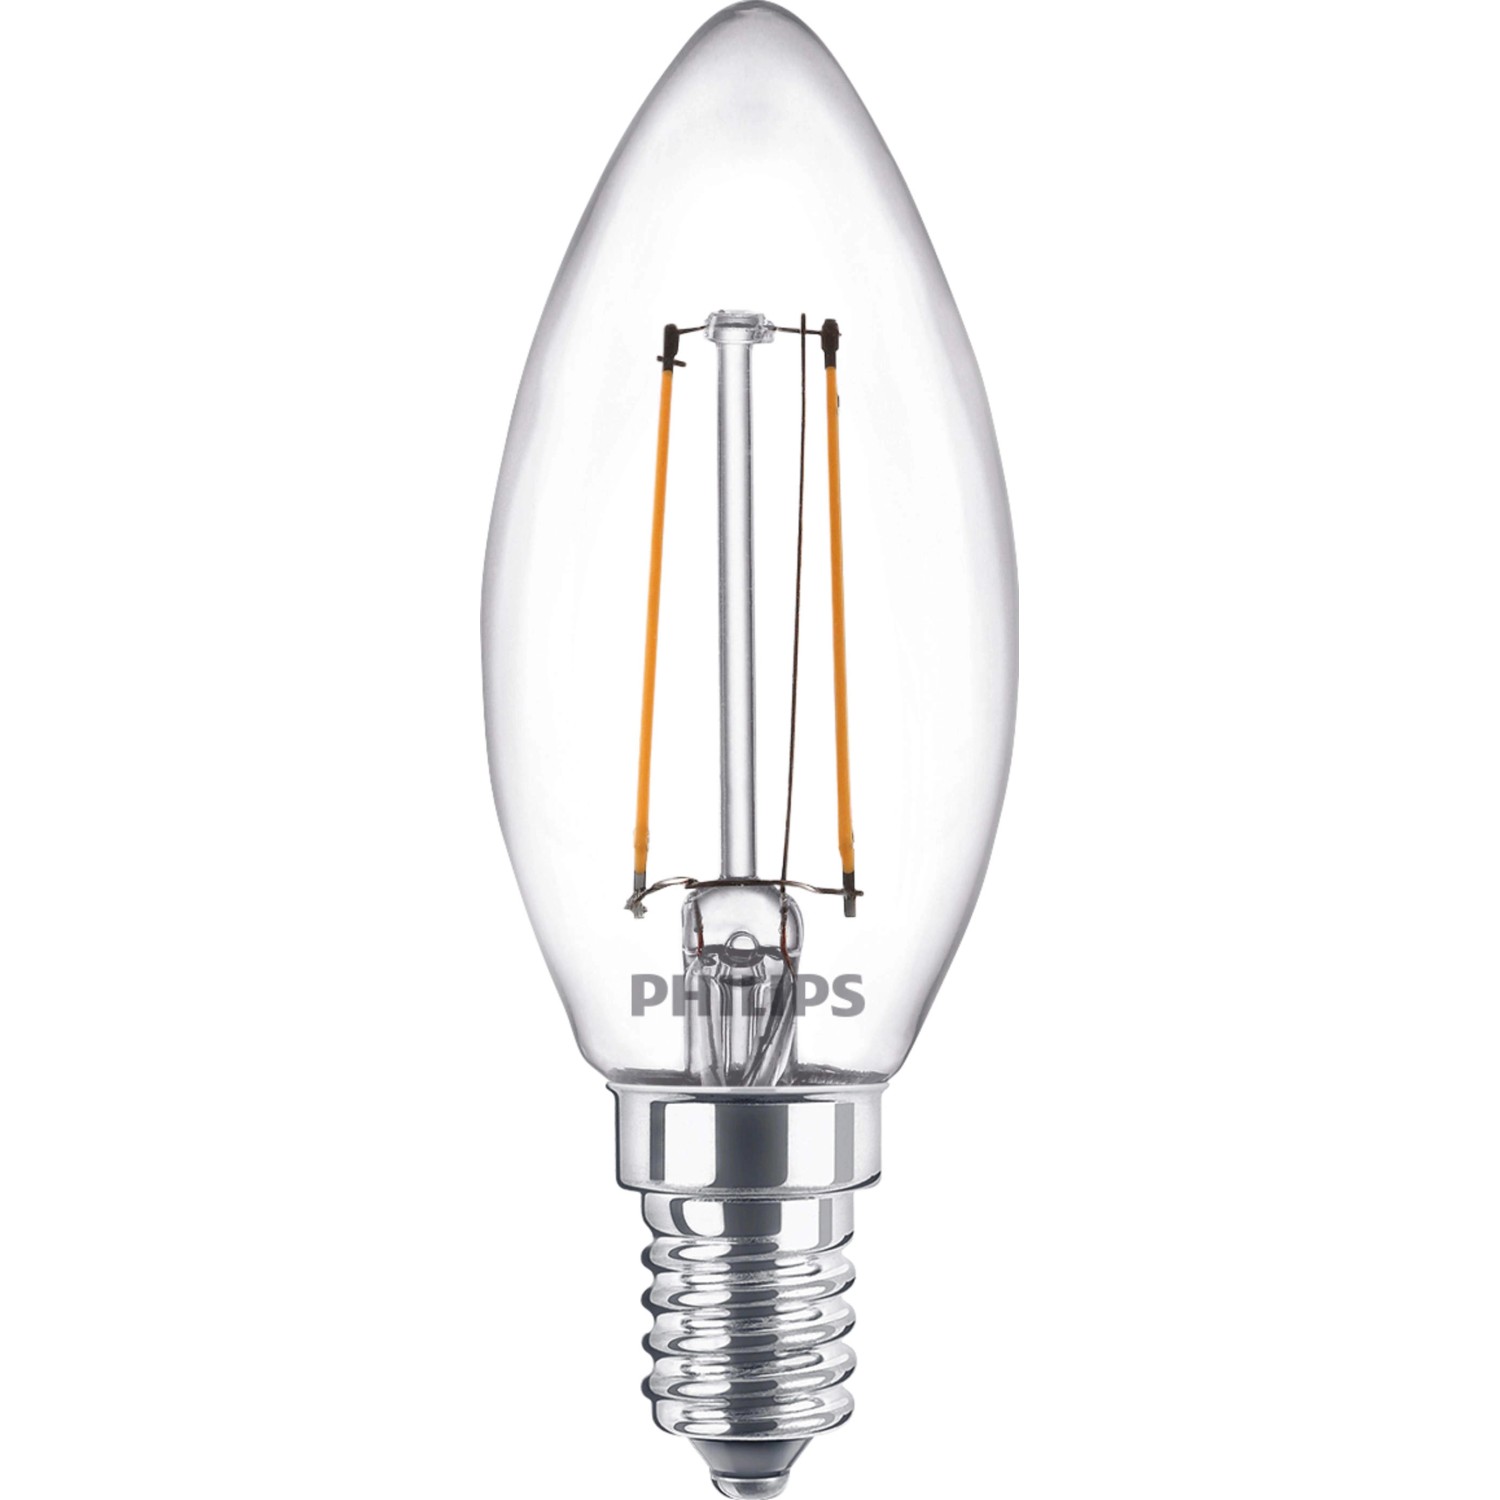 Philips LED-Leuchtmittel E14 Kerzenform 2 W Warmweiß 250 lm 9,7 x 3,5 cm (H x Ø)